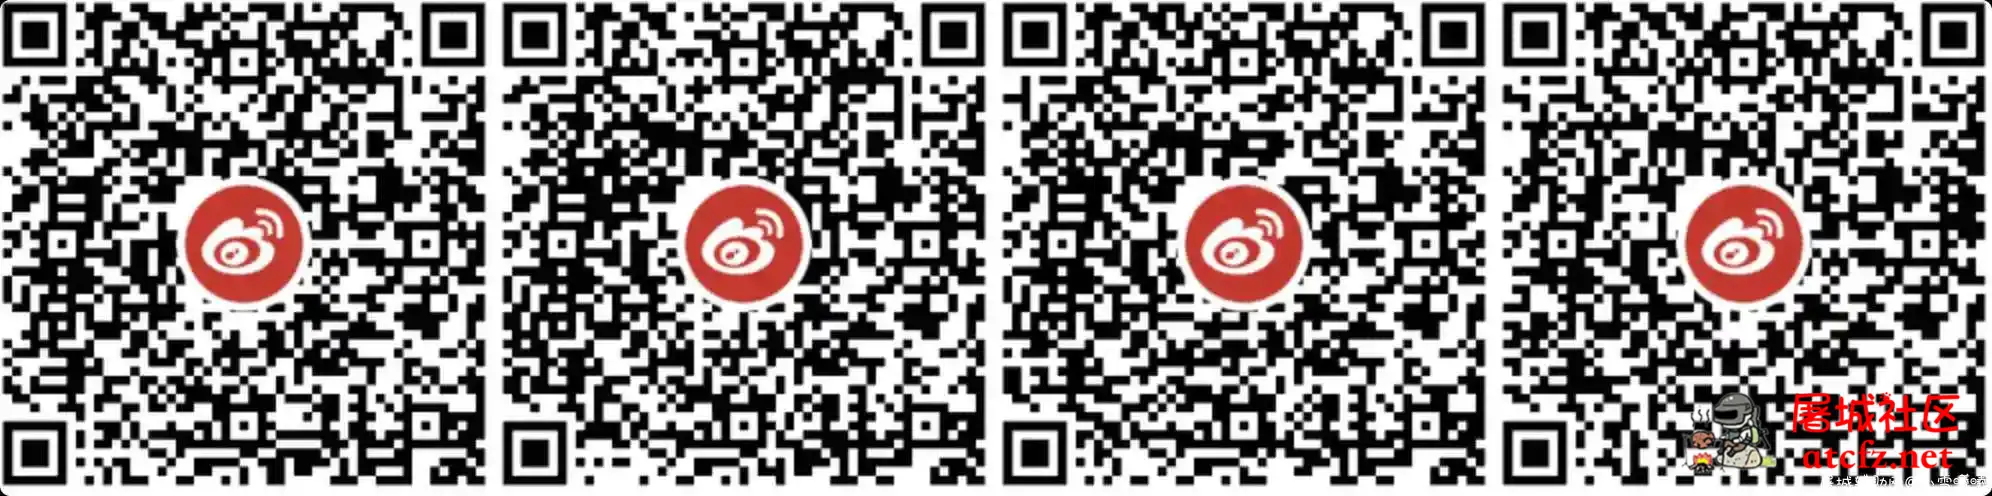 微博老用户万圣节抽3元红包活动 屠城辅助网www.tcfz1.com6061